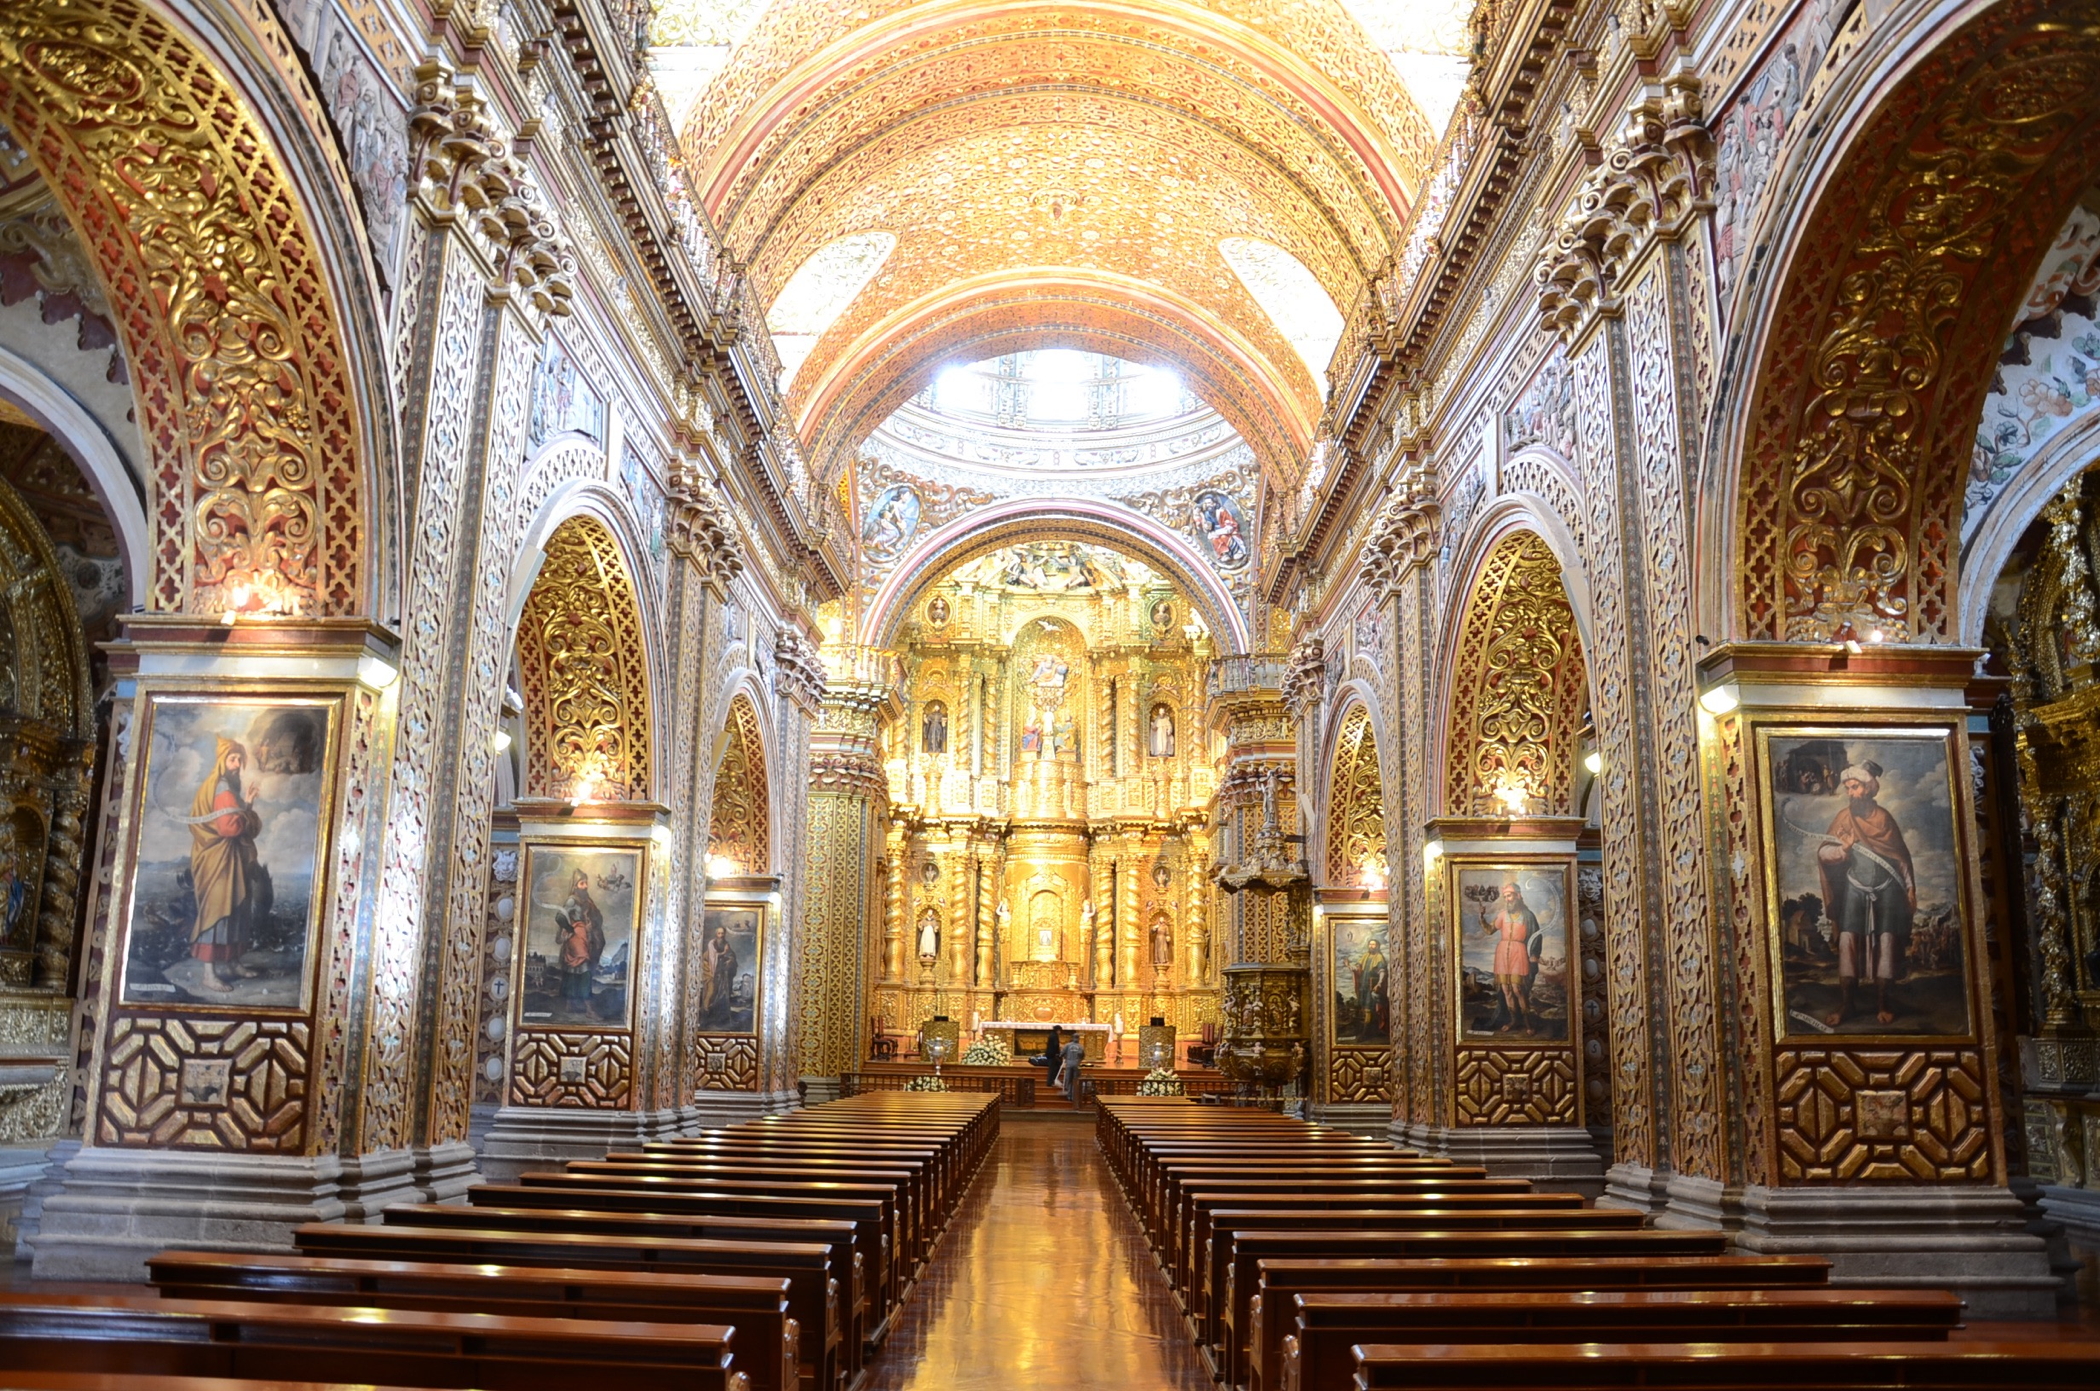 La Compañía de Jesús Church in Old town Quito Altstadt